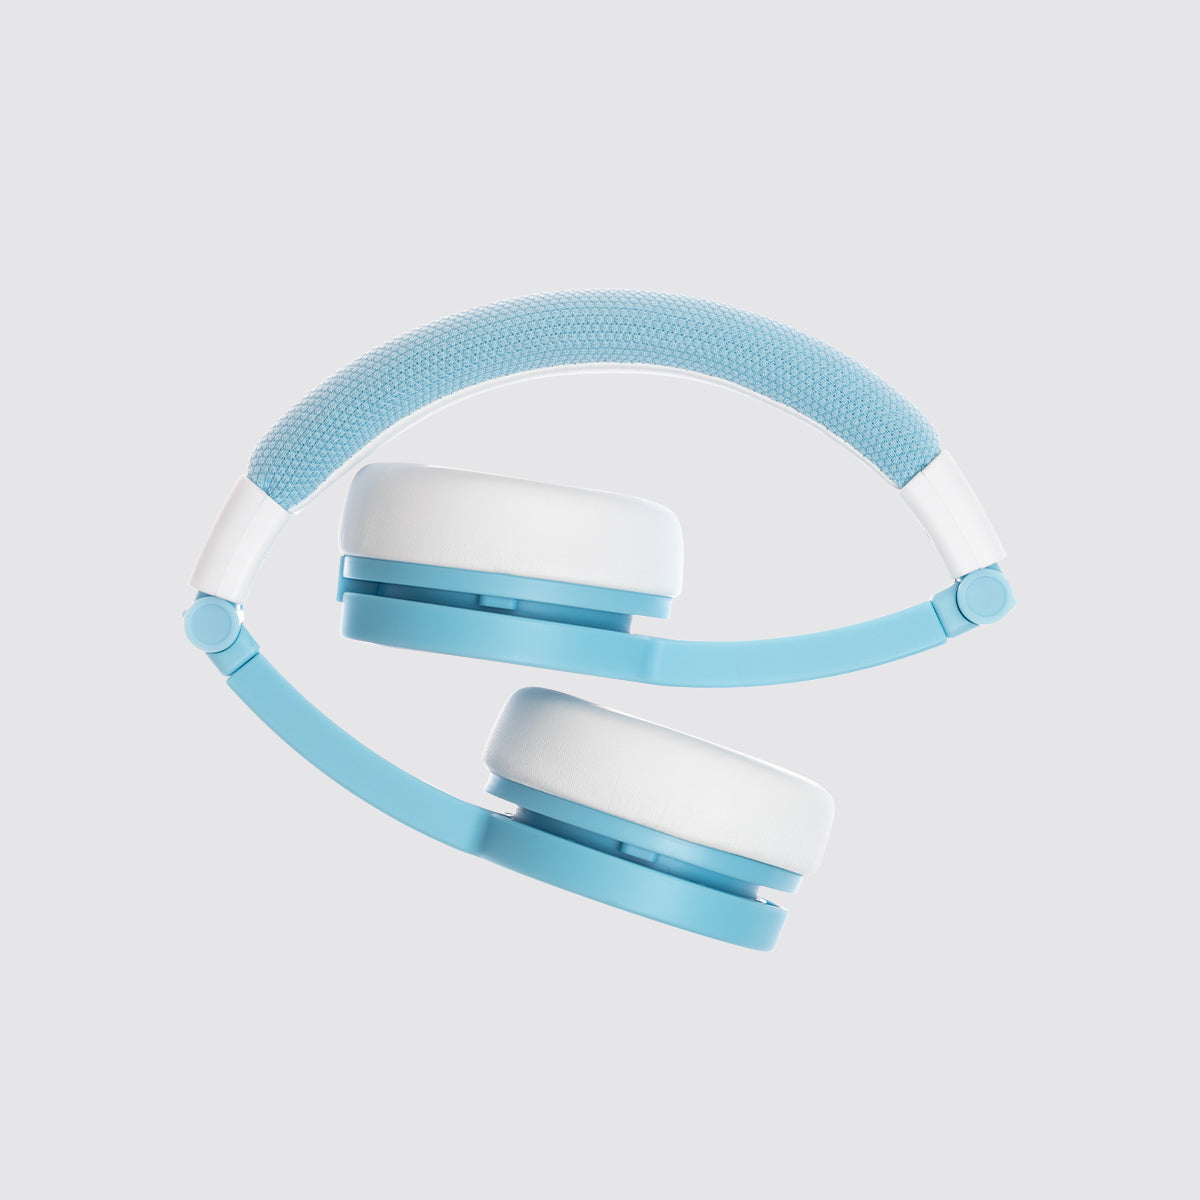 Blue Headphones by Tonies